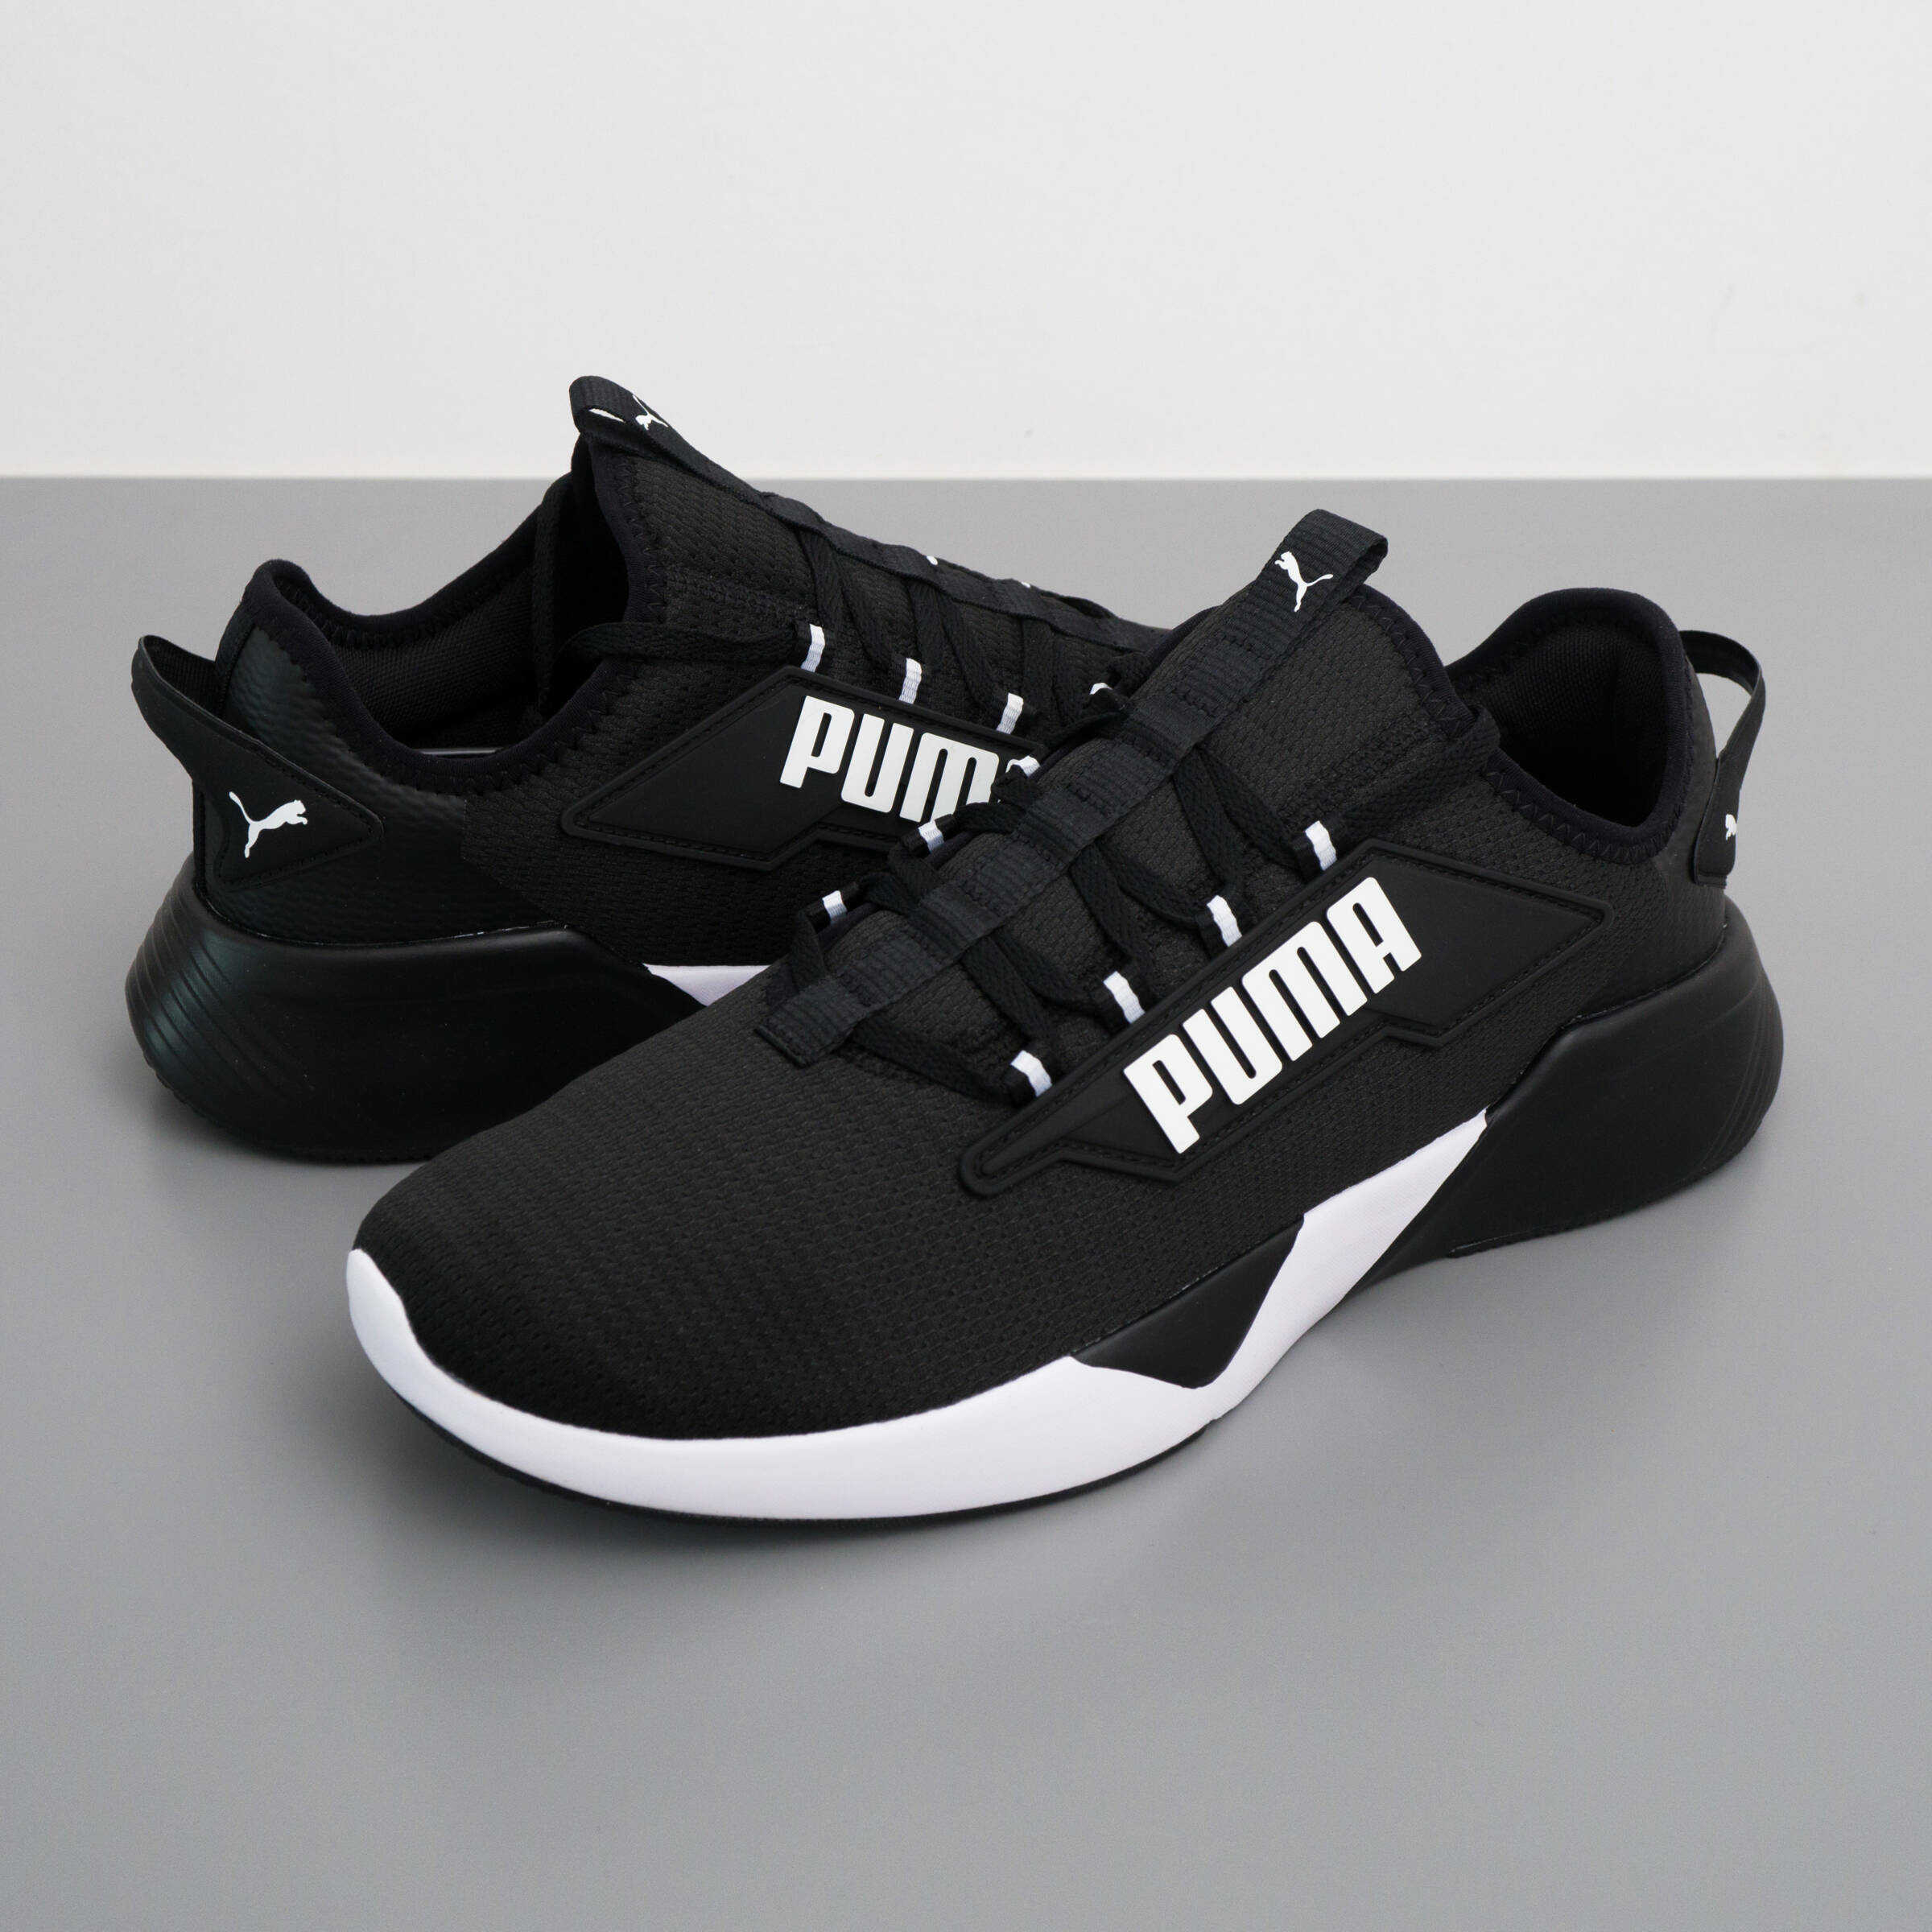 Sneakersy męskie Puma Retaliate 2 buty treningowe czarne-białe (376676 01)